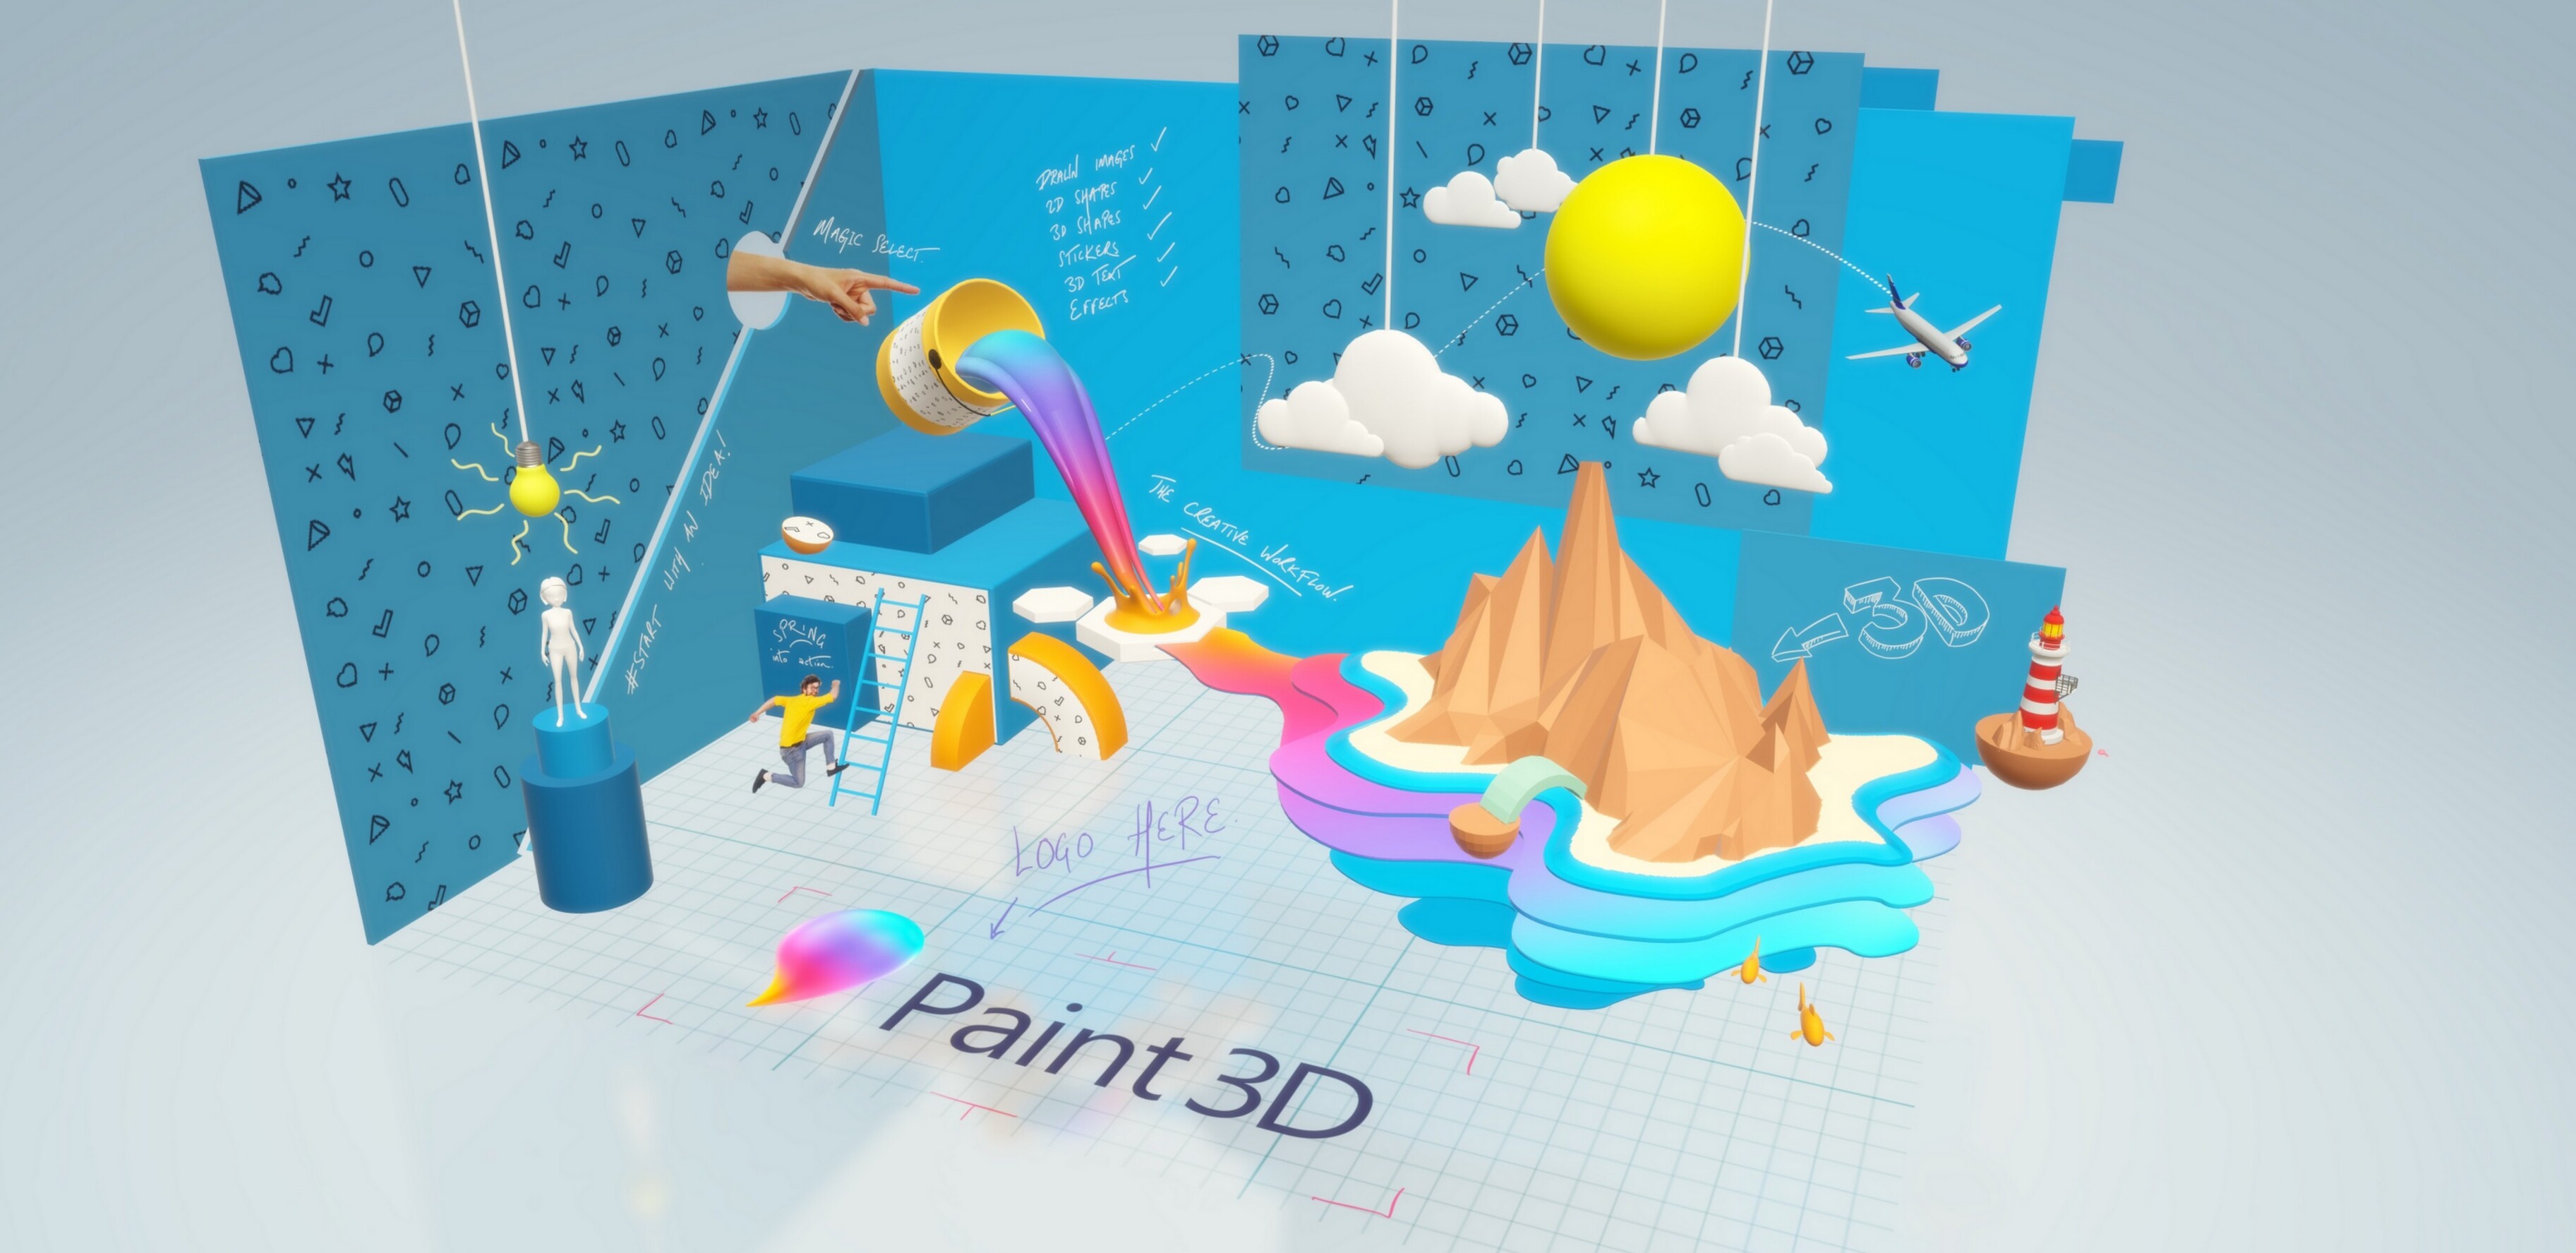    Windows 10  Paint 3D   